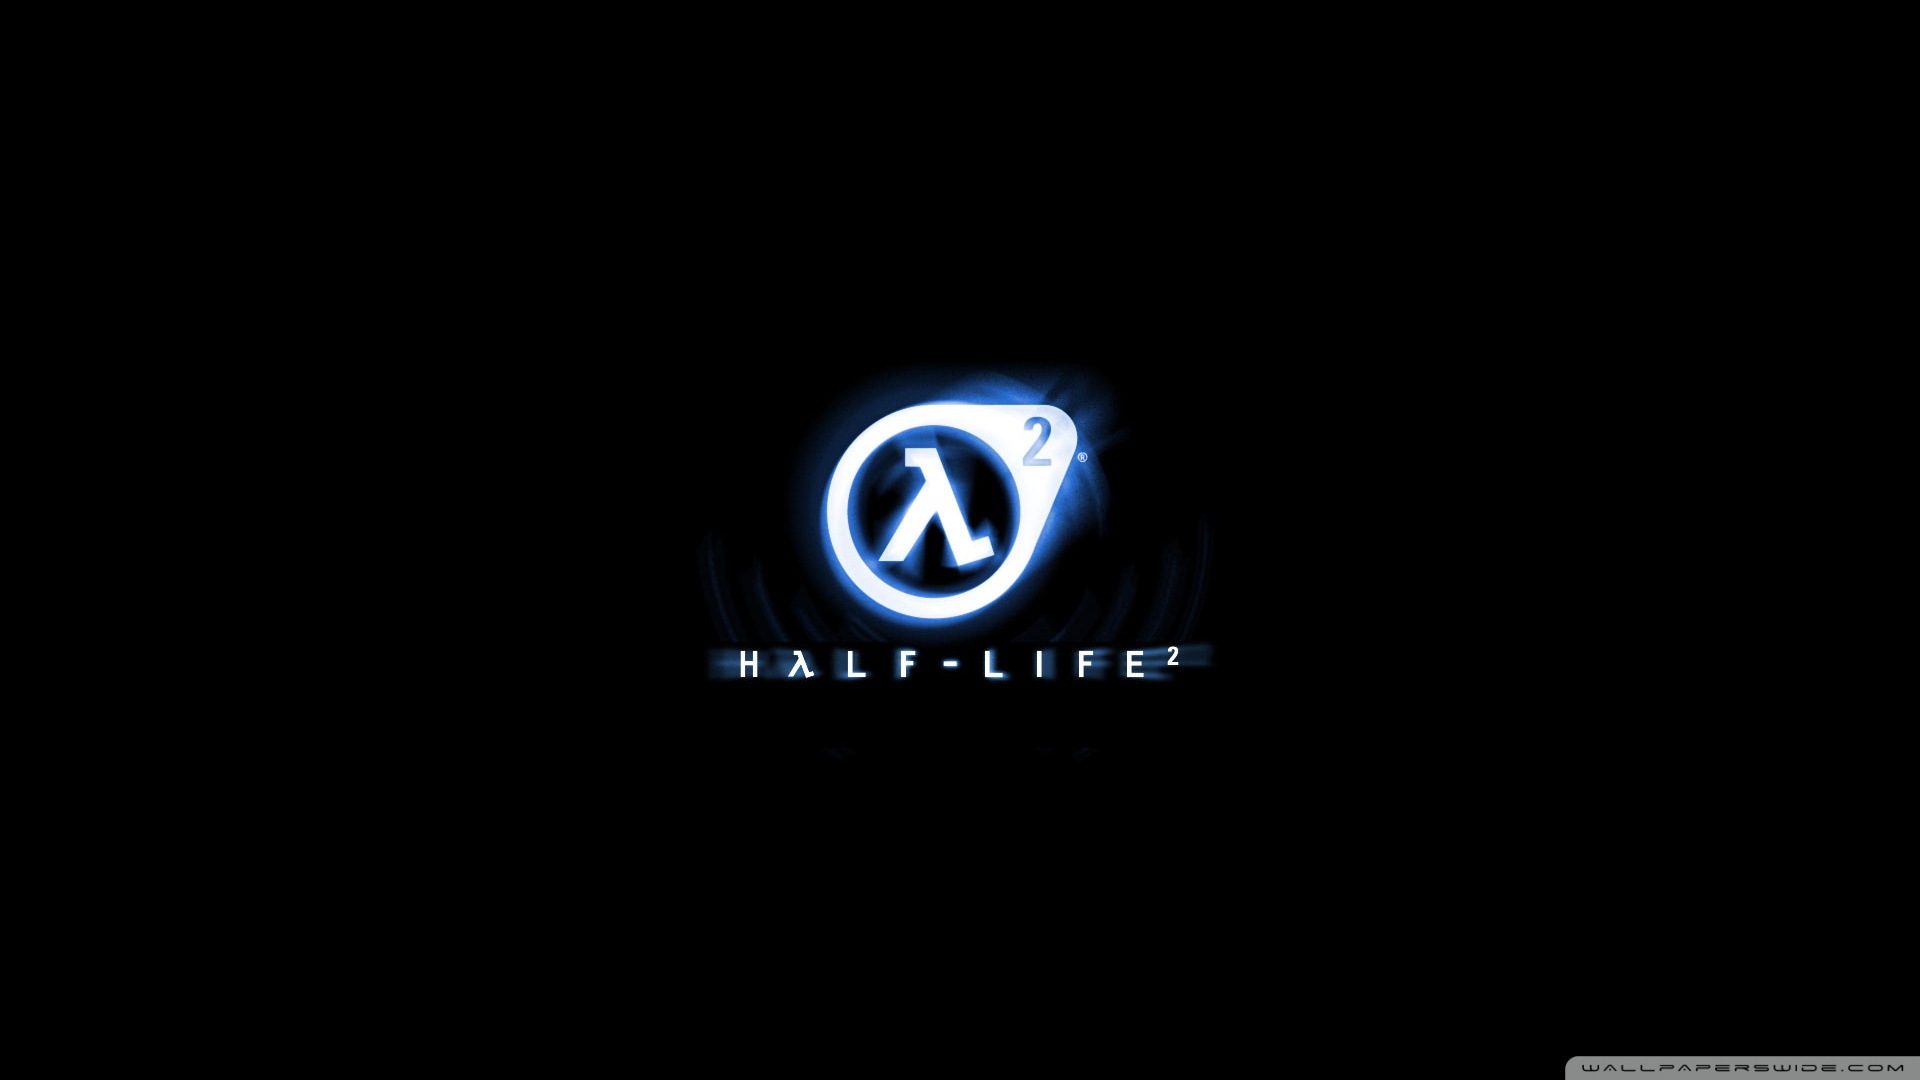 [49+] Half Life 2 Wallpaper | WallpaperSafari